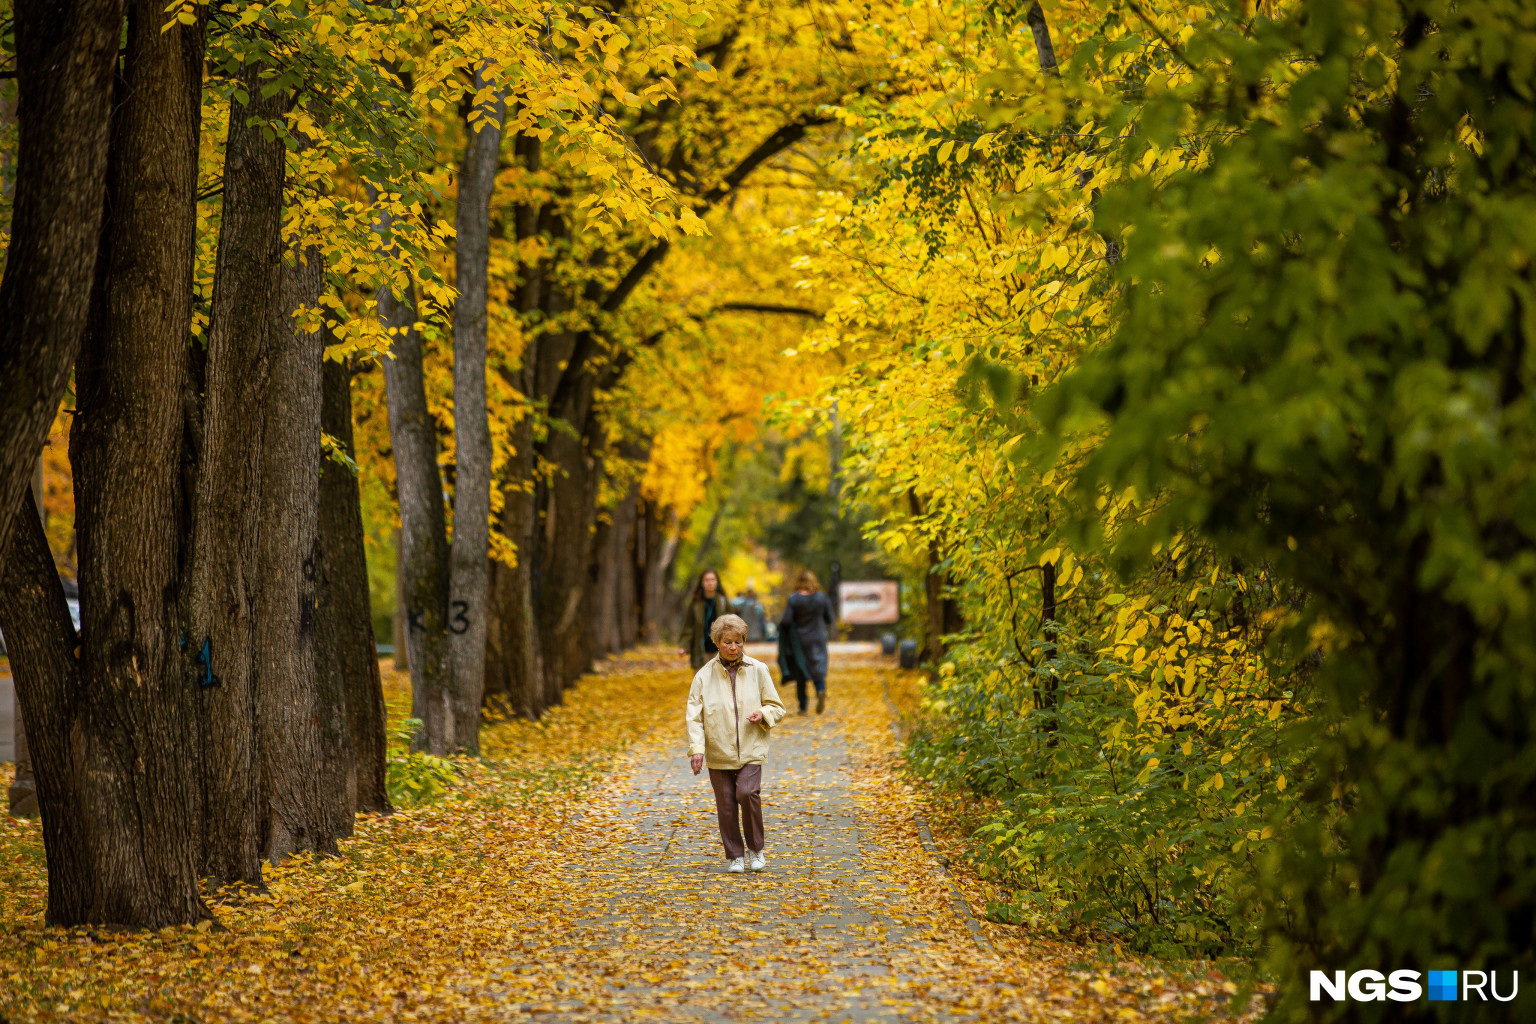 Желтые листья засыпали дорожки для прогулок